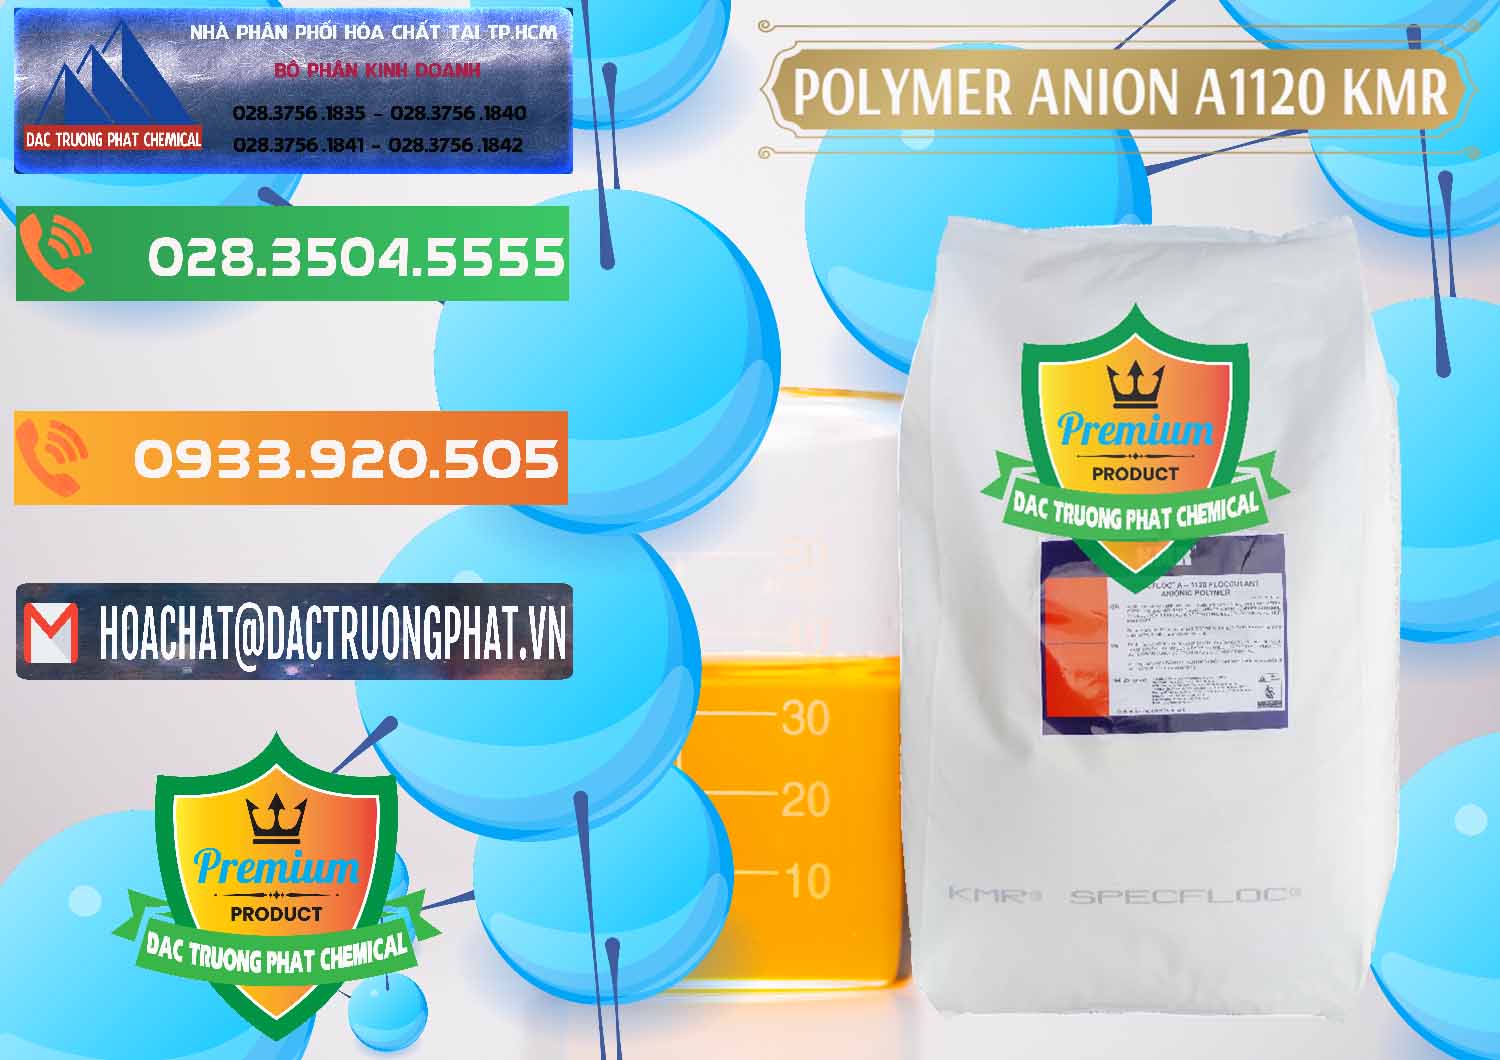 Đơn vị chuyên bán _ cung cấp Polymer Anion A1120 - KMR Anh Quốc England - 0119 - Chuyên phân phối - kinh doanh hóa chất tại TP.HCM - hoachatxulynuoc.com.vn